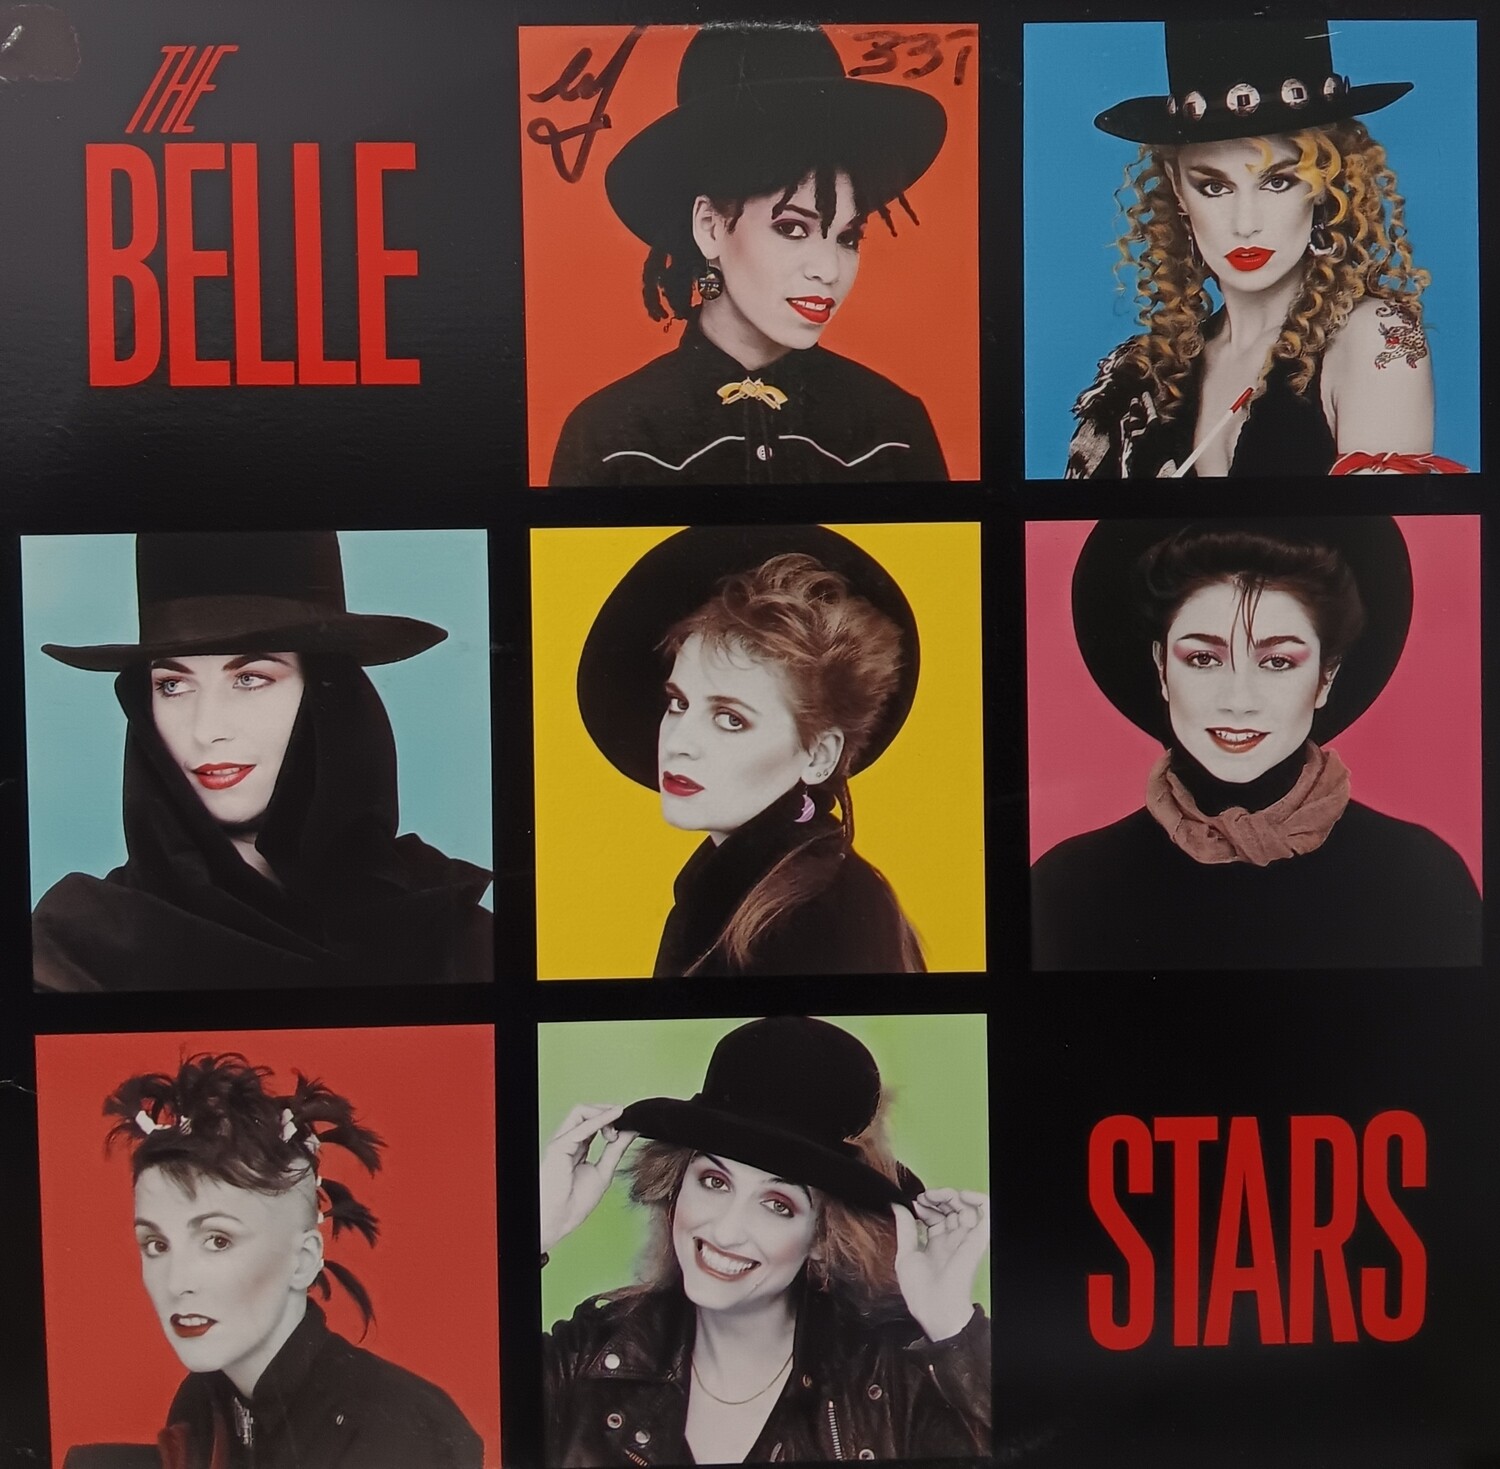 THE BELLE STARS - The Belle Stars